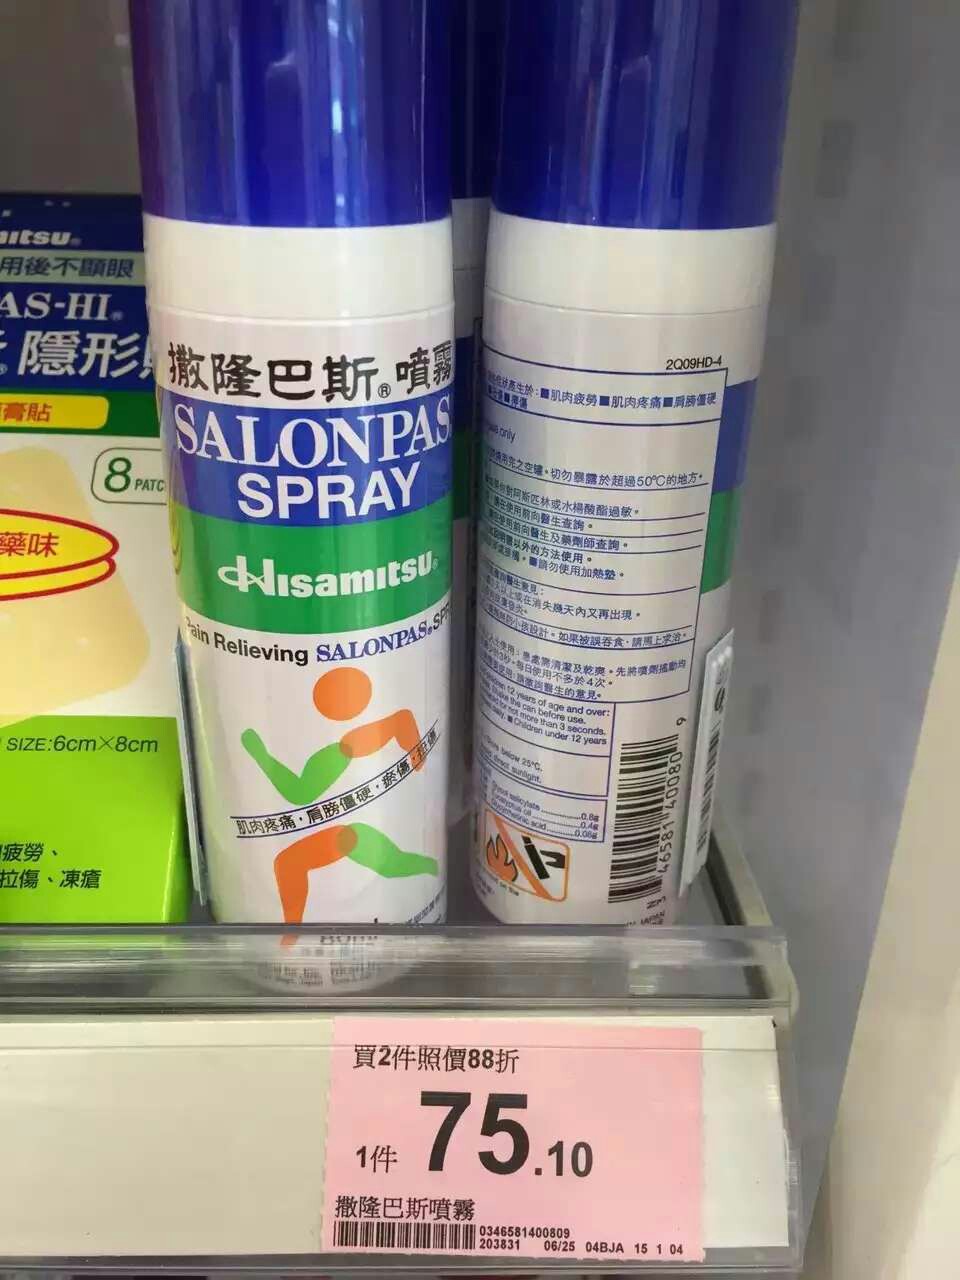 香港代购正品撒隆巴斯喷雾